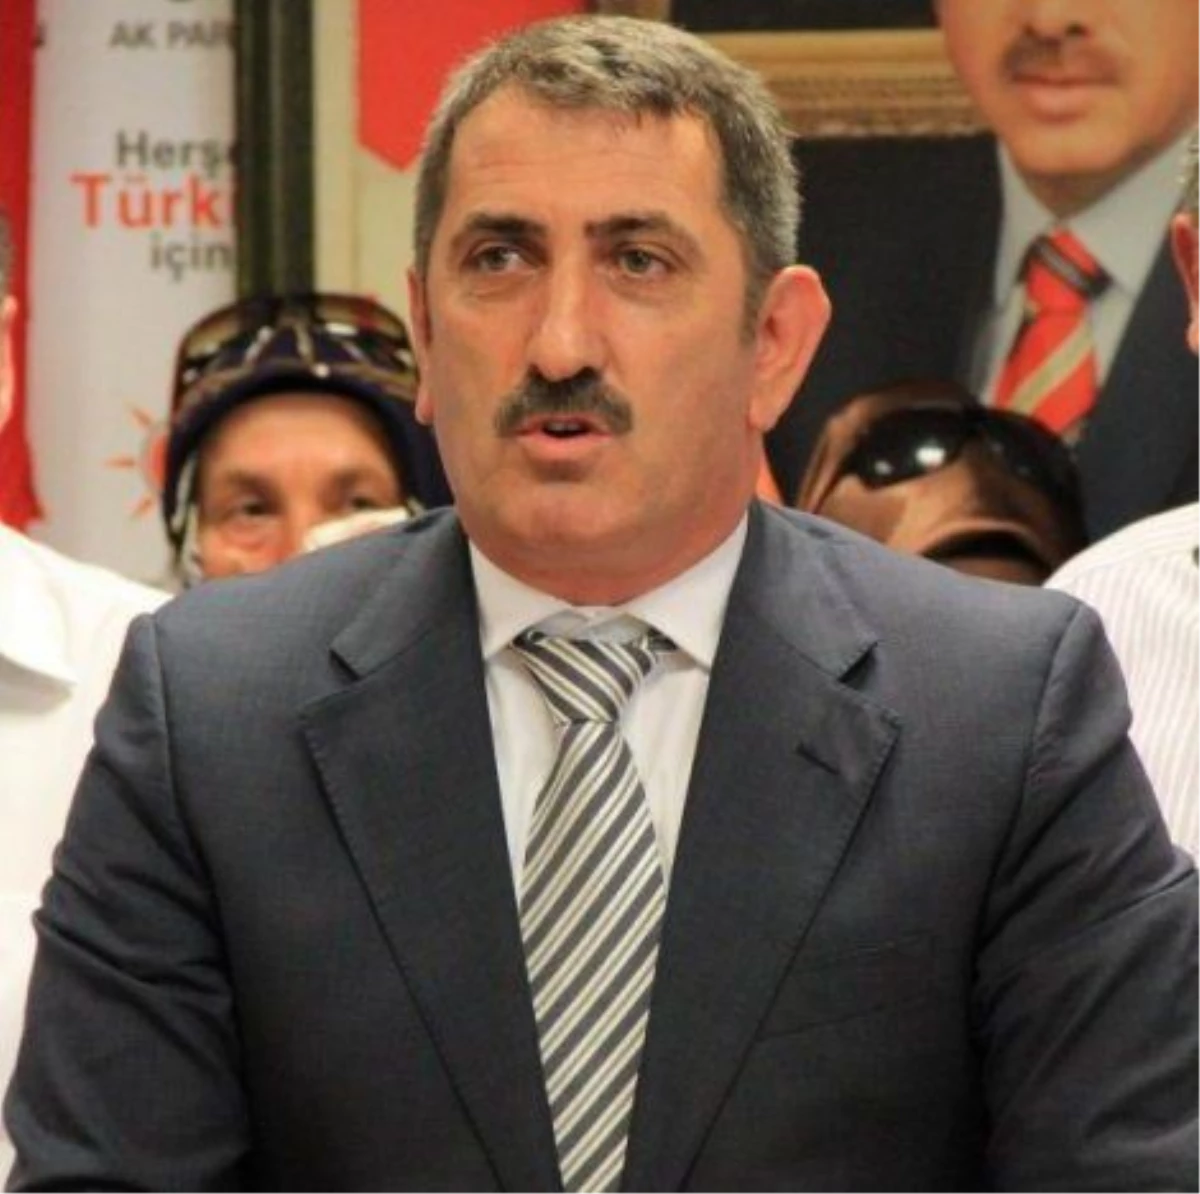 AK Parti Samsun İl Başkanı Köktaş Açıklaması